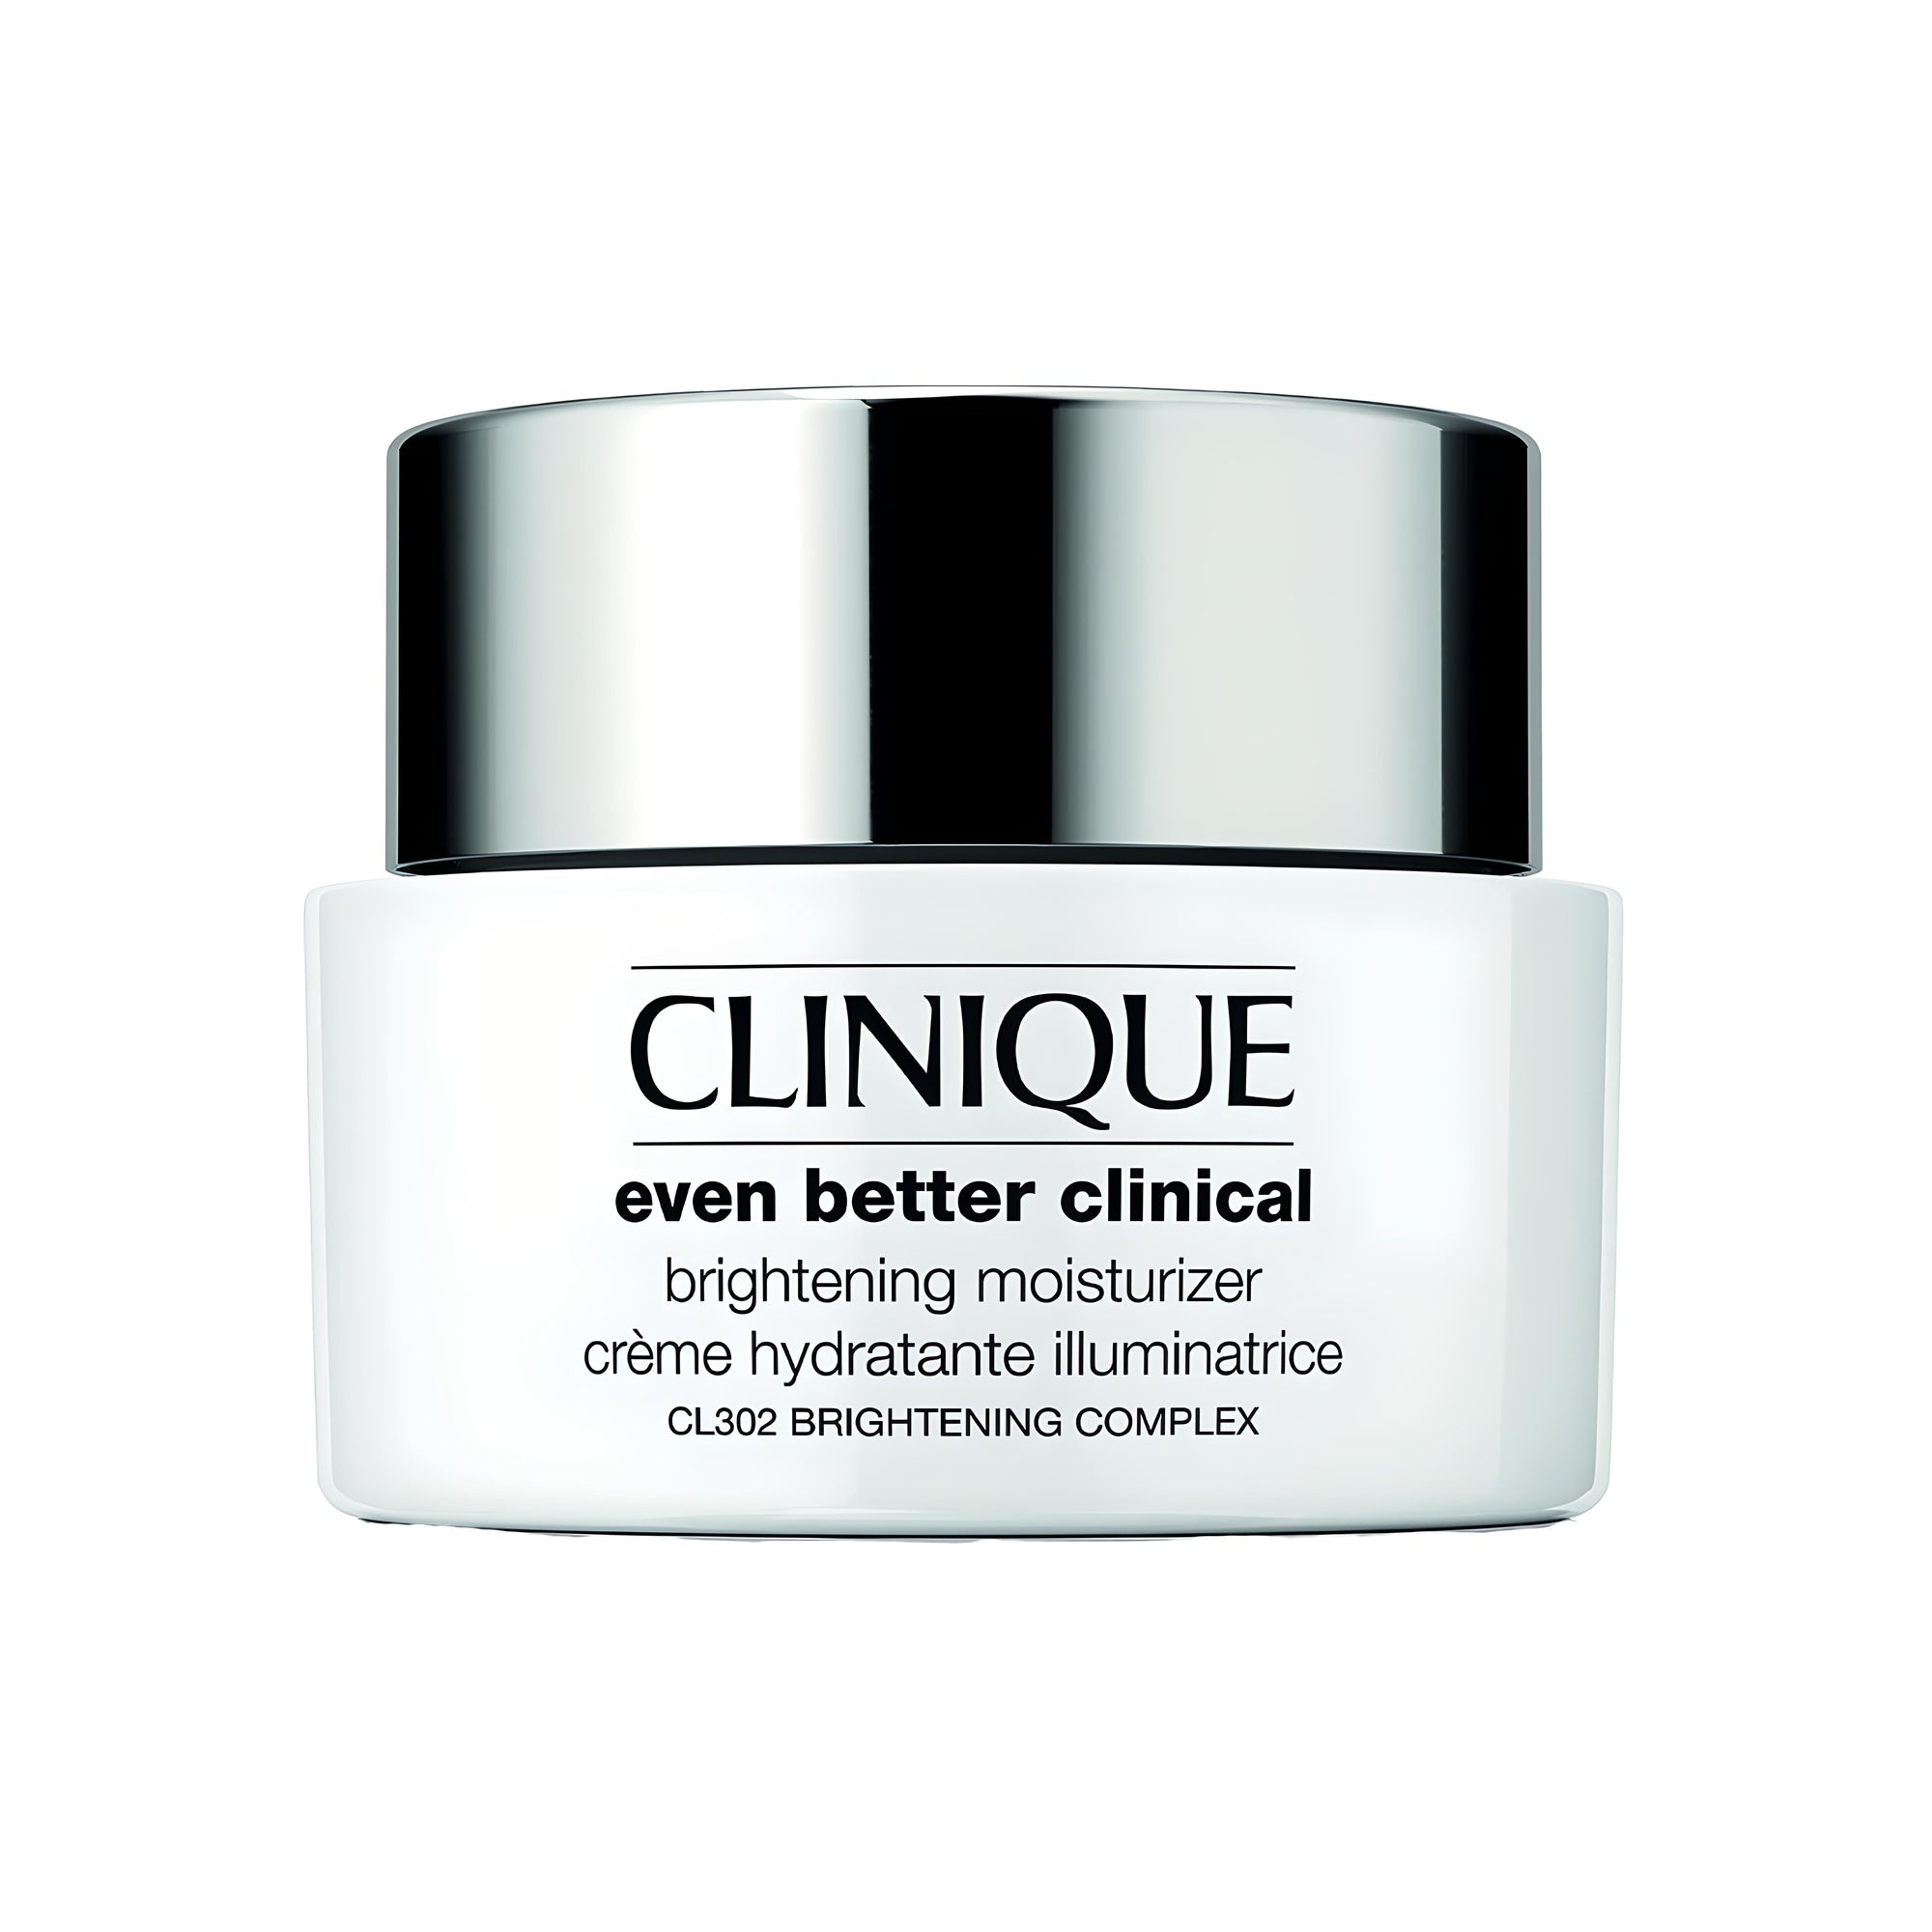 EVEN BETTER CLINICAL brightening moisturizer Gesichtspflege CLINIQUE   